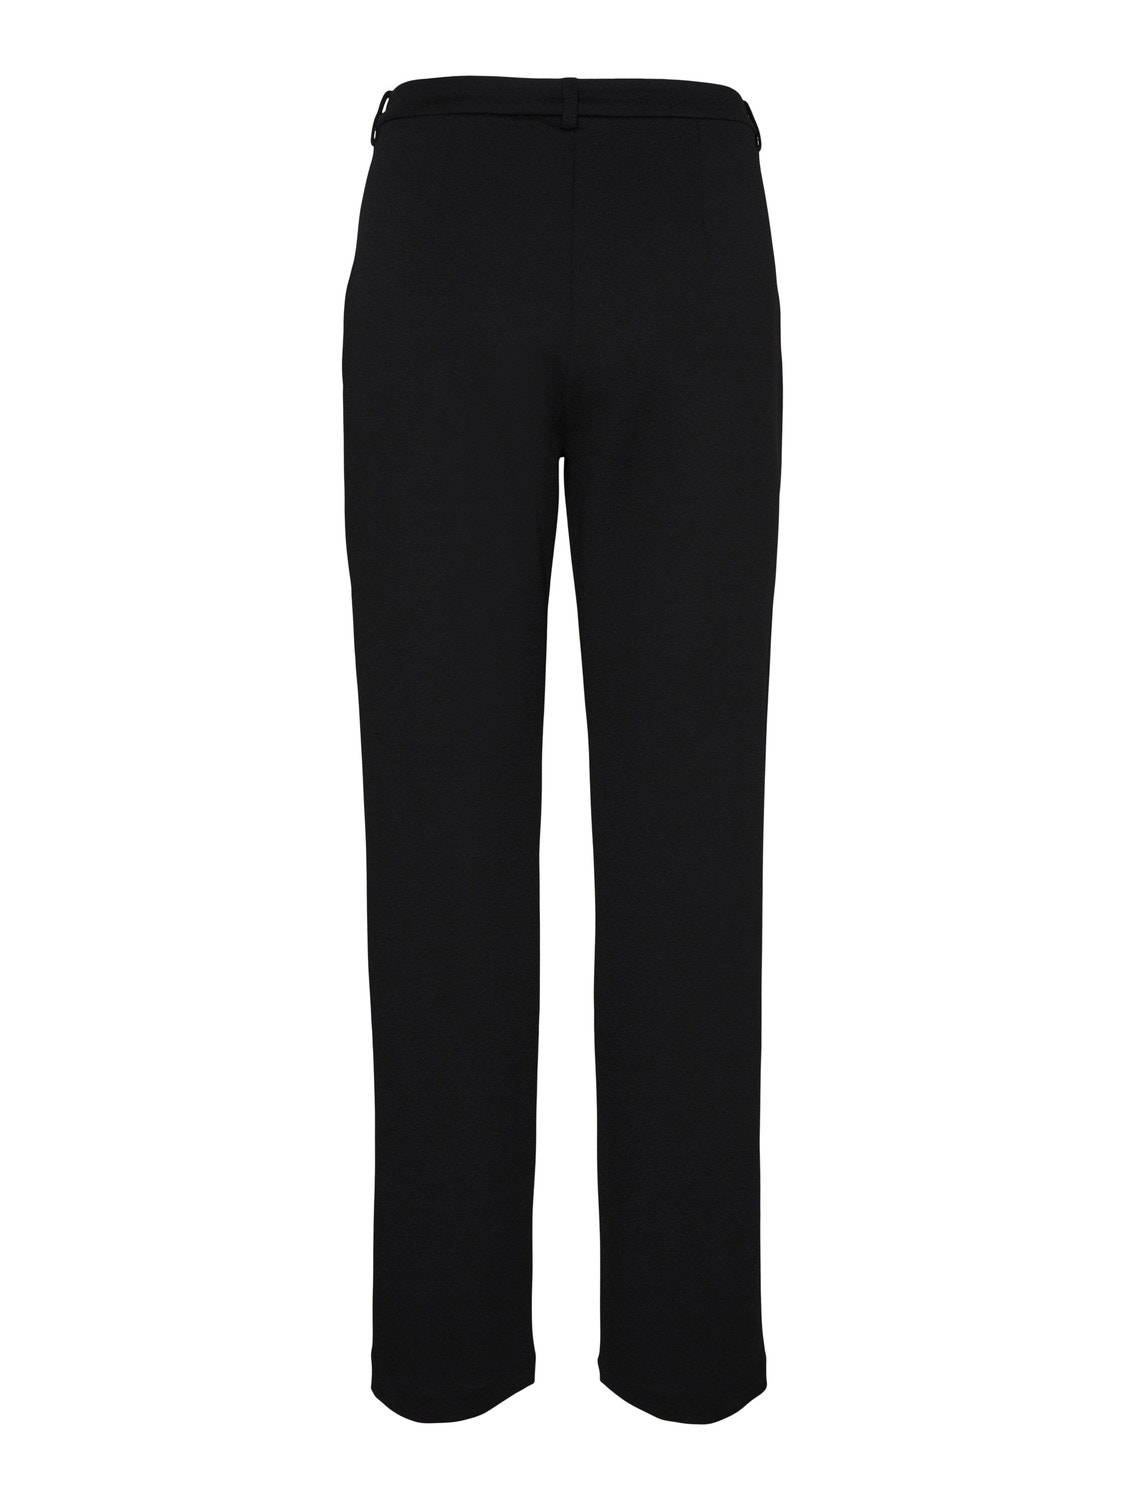 Vero Moda VMZAMIRA Trousers -Black - 10255128